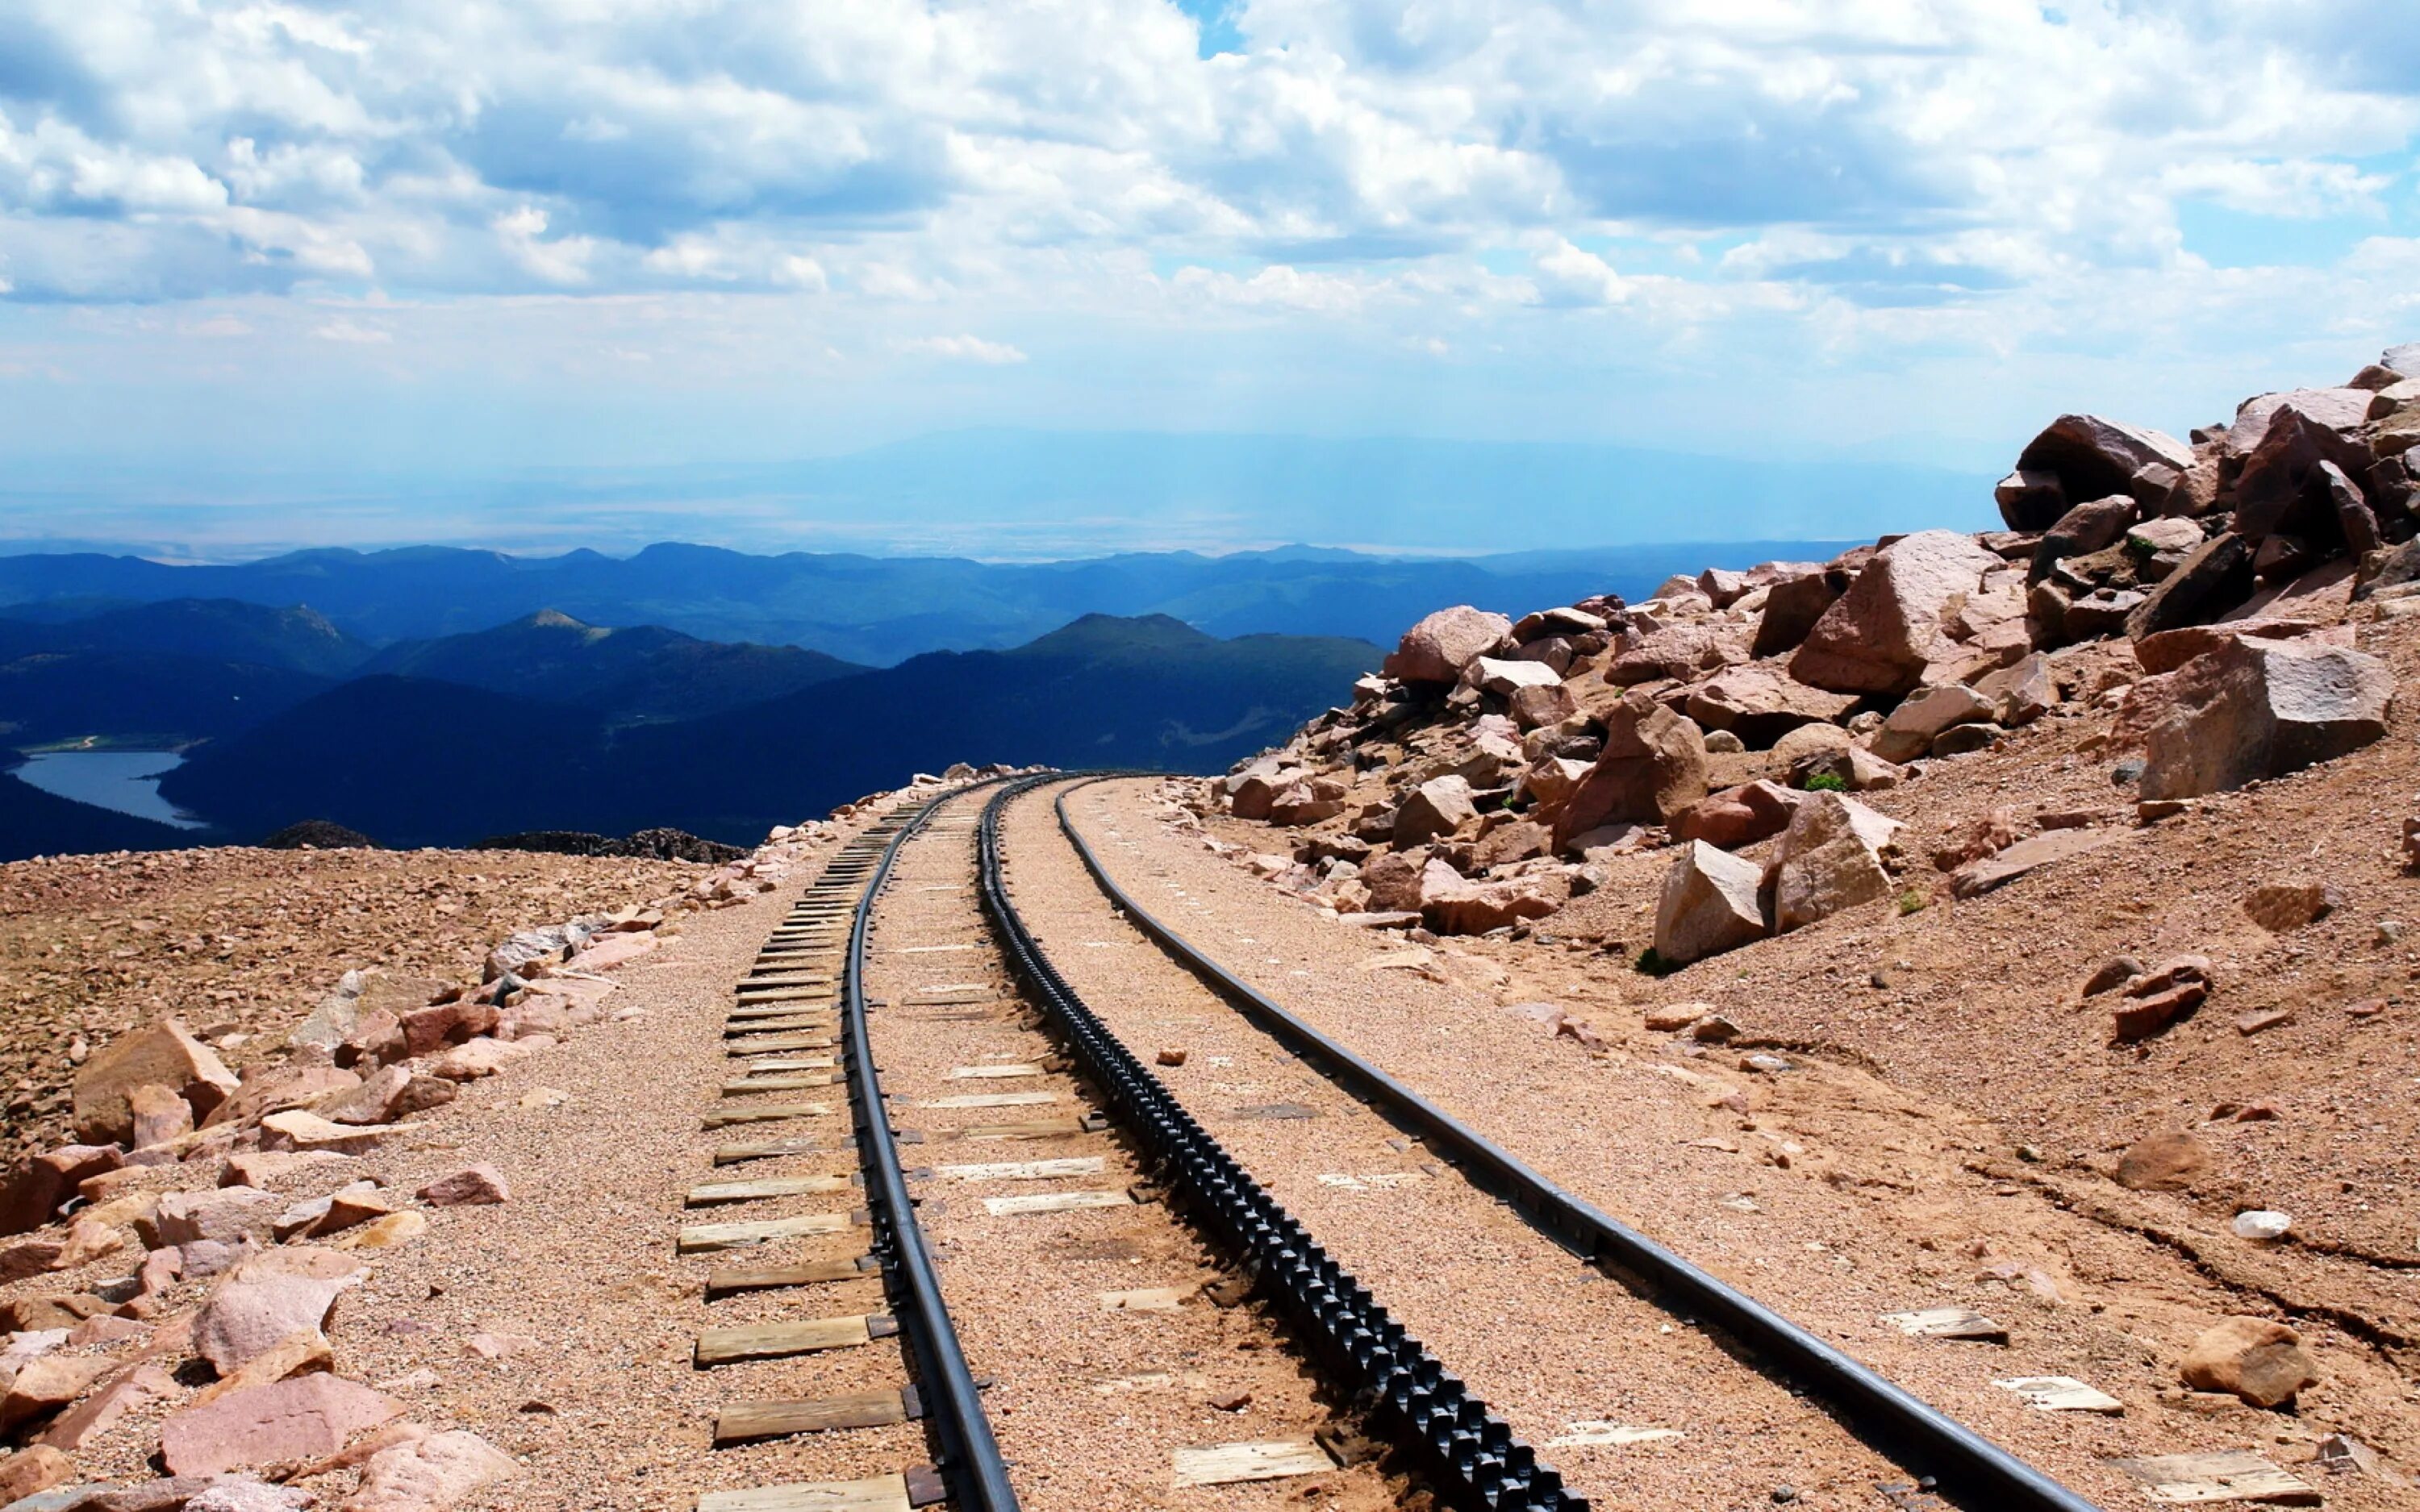 Централ Пасифик железная дорога. ЖД пути. Железная дорога в пустыне. ЖД В горах.